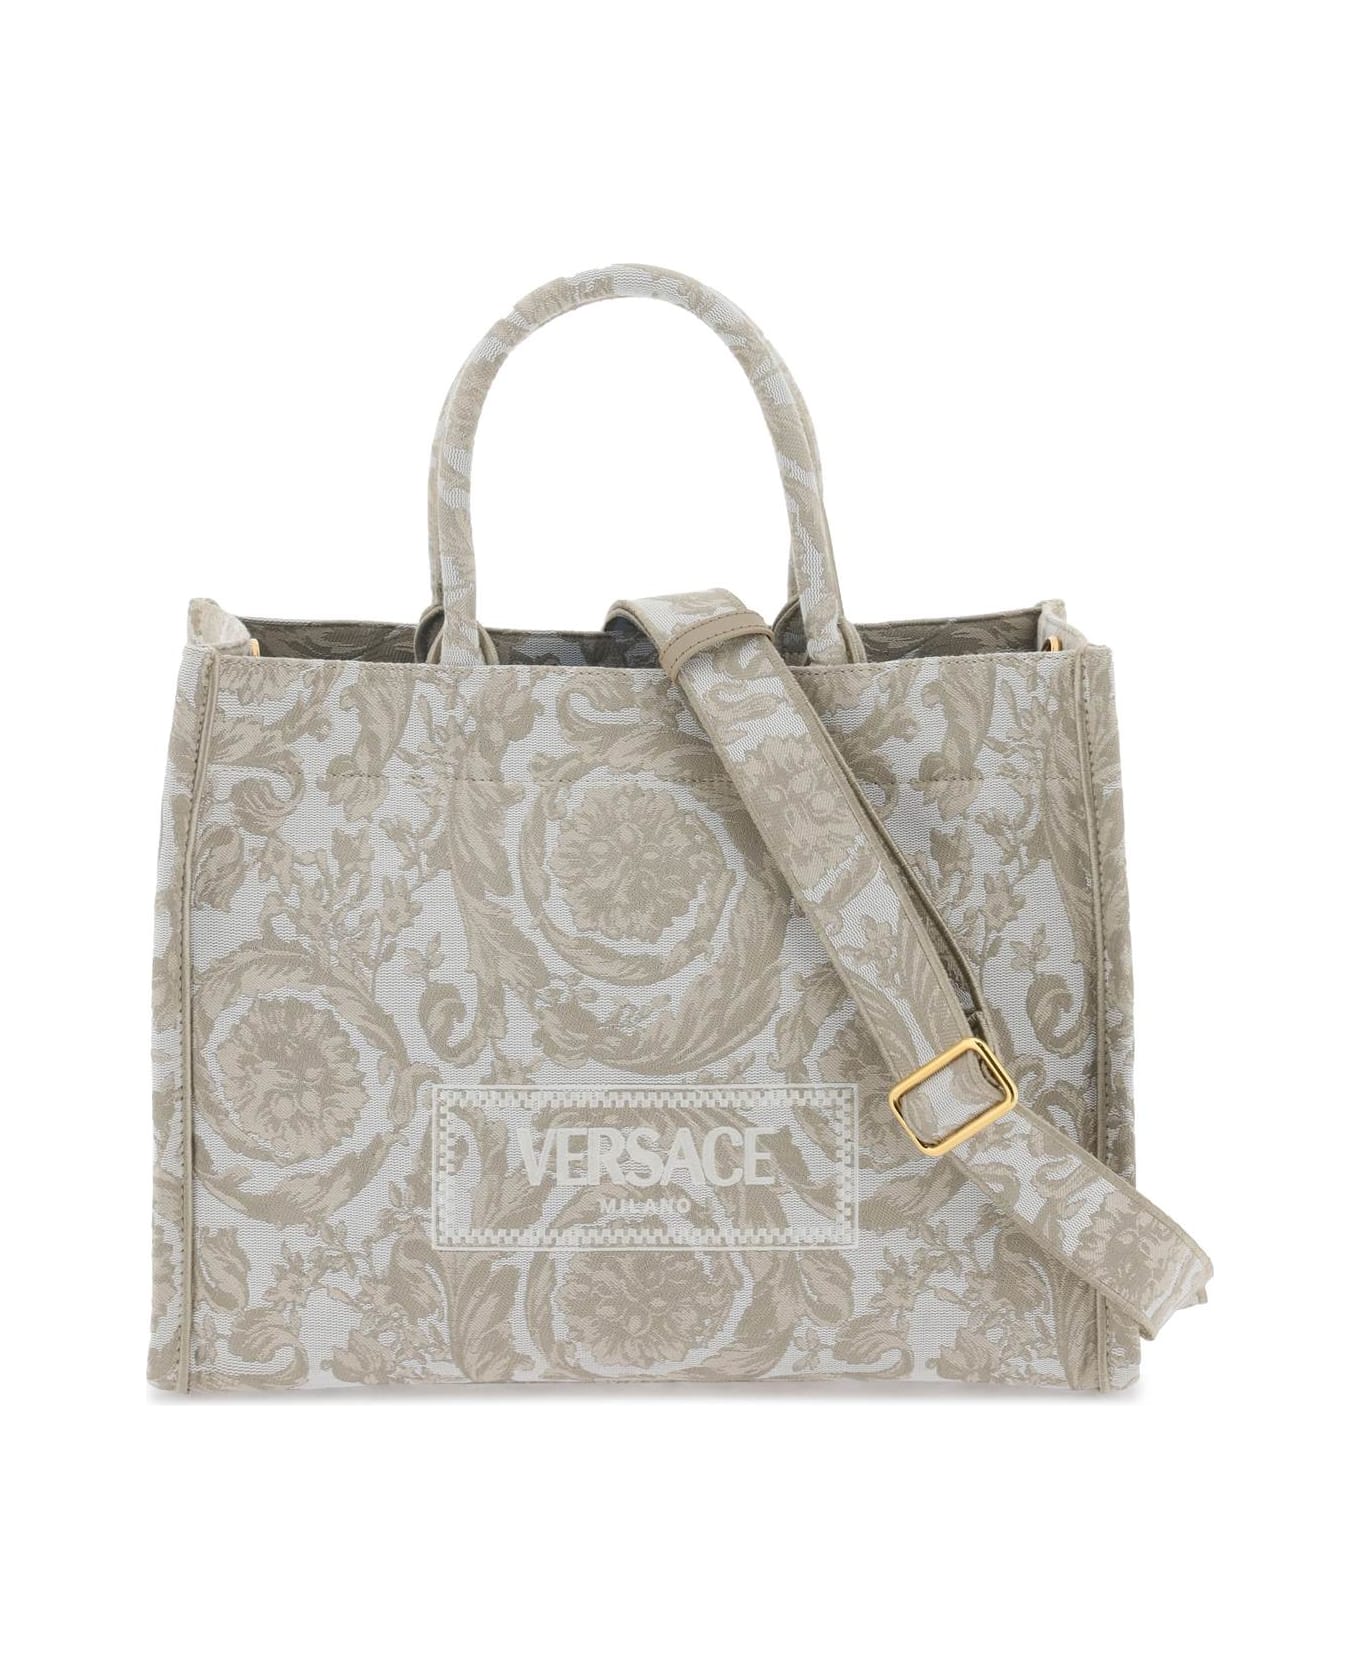 Versace Two-tone Fabric Bag - BEIGE BEIGE VERSACE GOLD